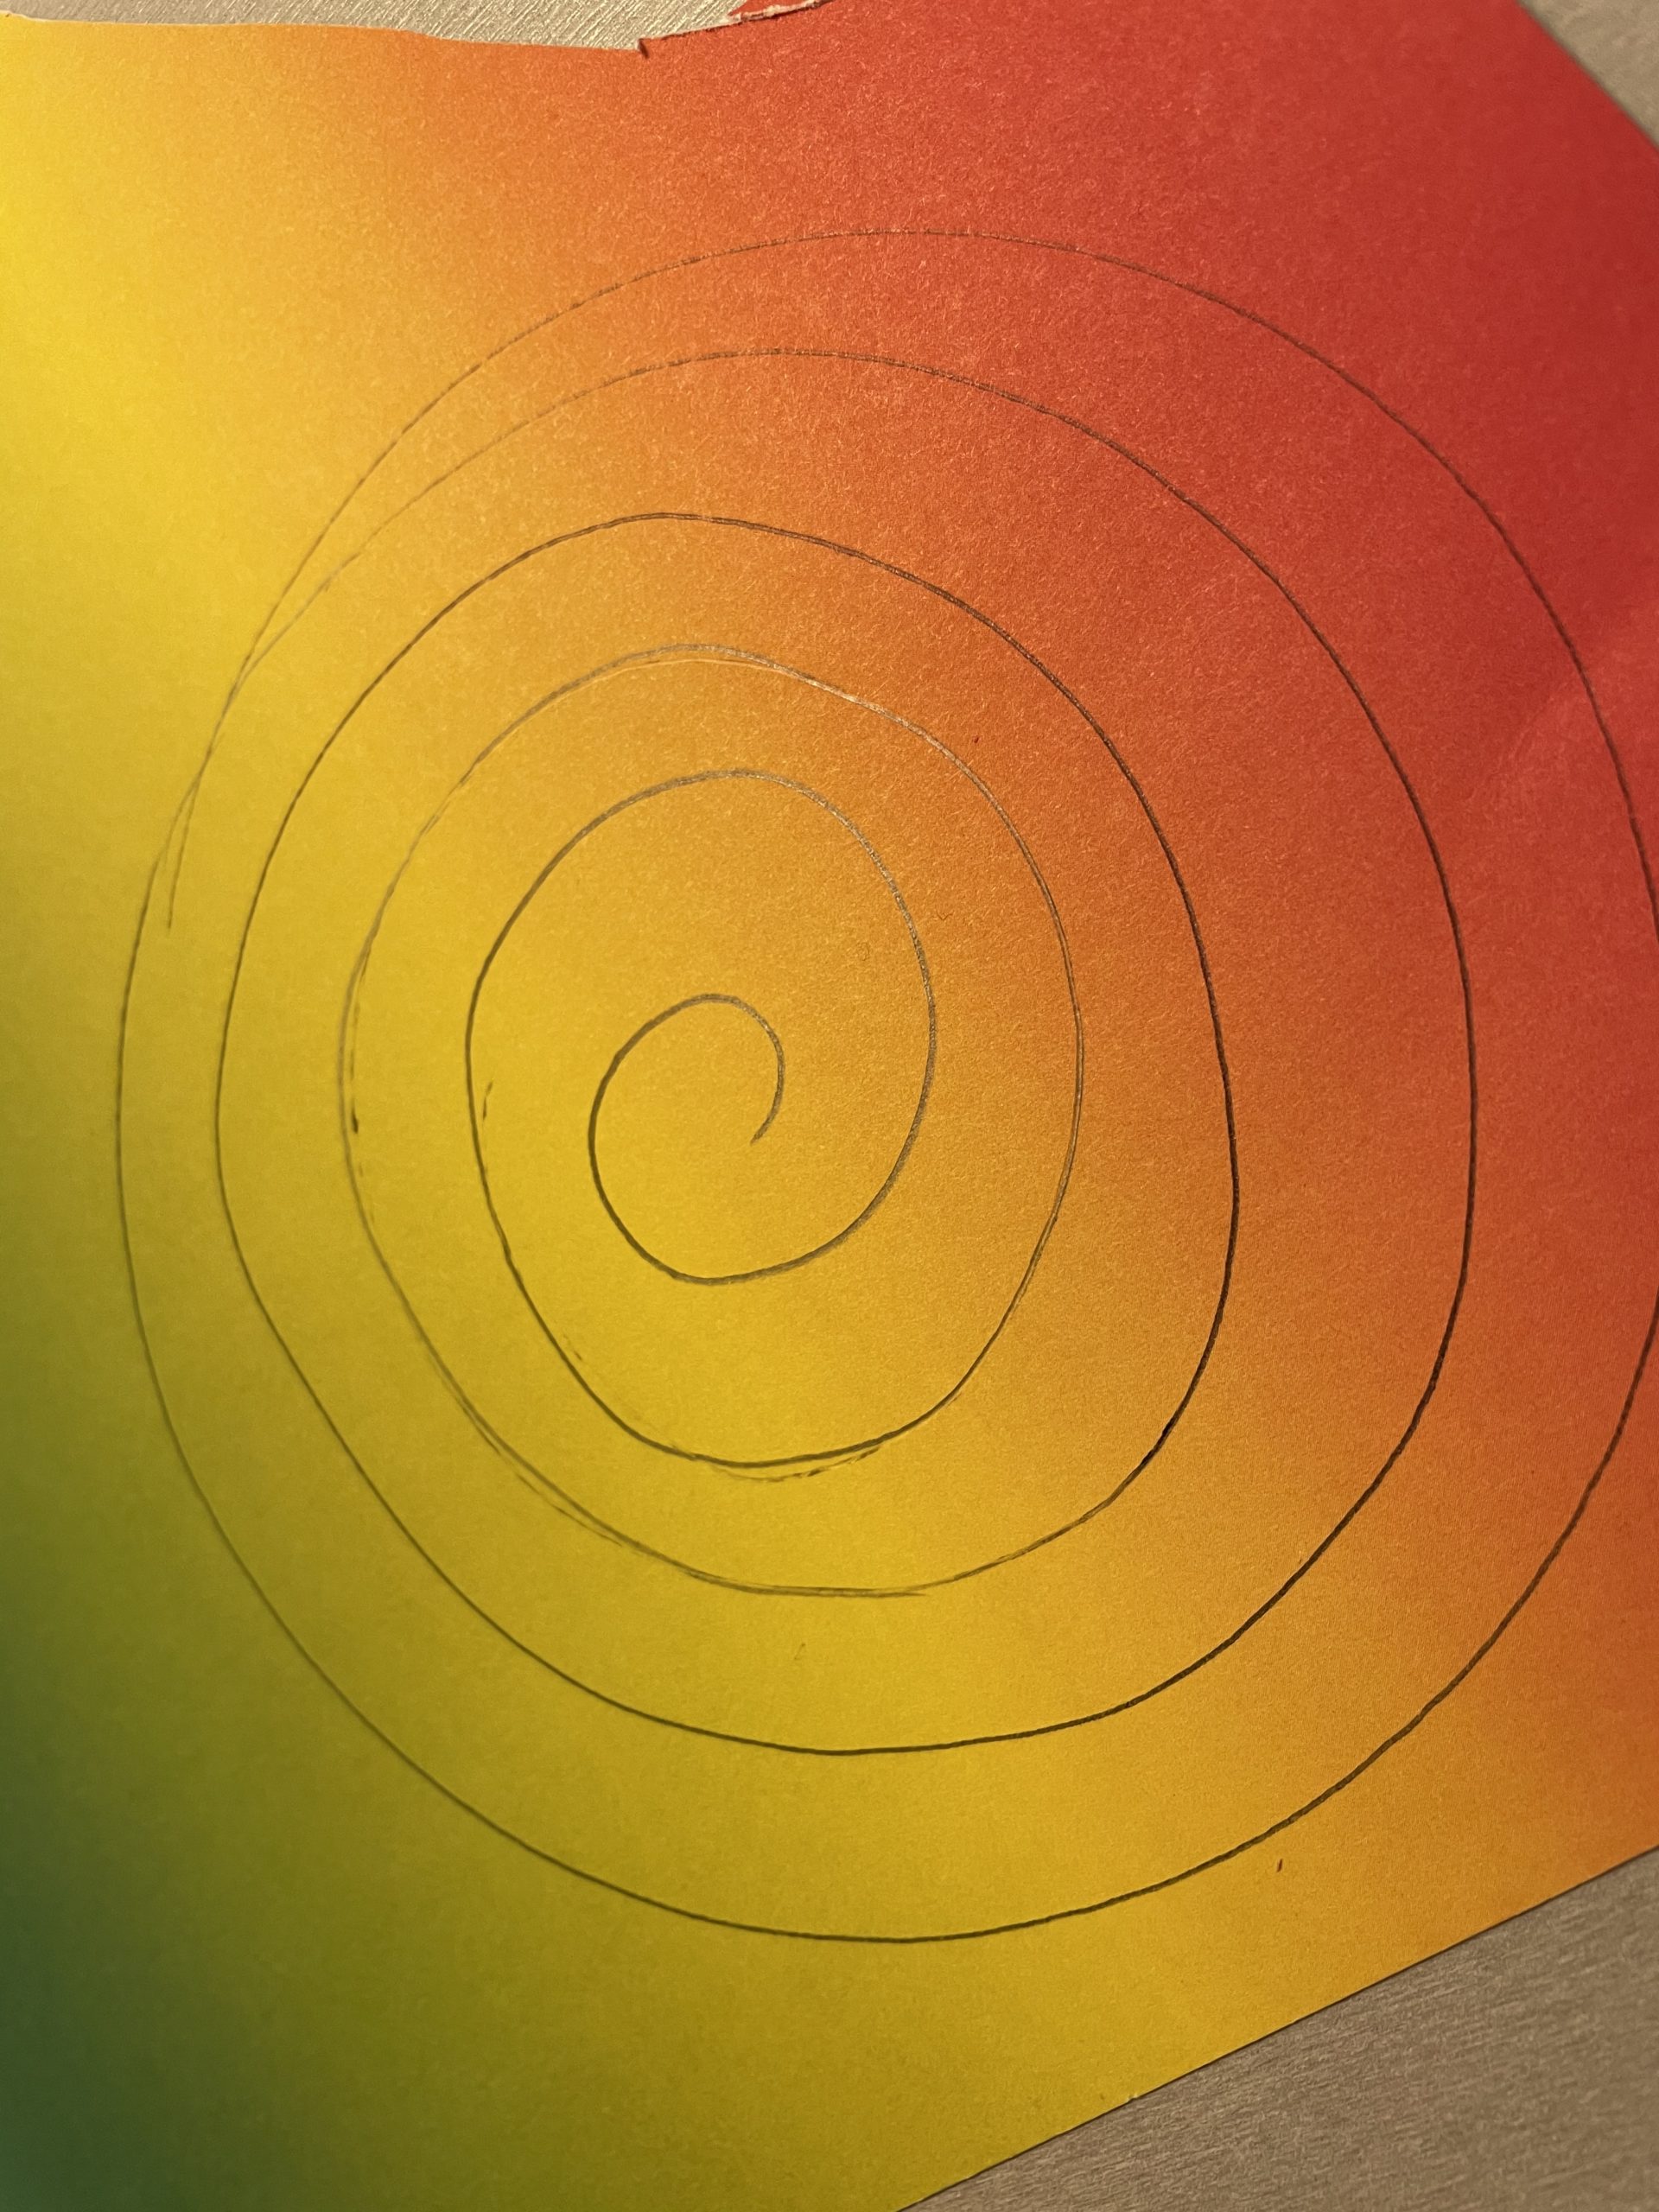 Bild zum Schritt 2 für das Bastel- und DIY-Abenteuer für Kinder: 'Dann malt ihr in den Kreis eine Spirale. Die Spirale...'